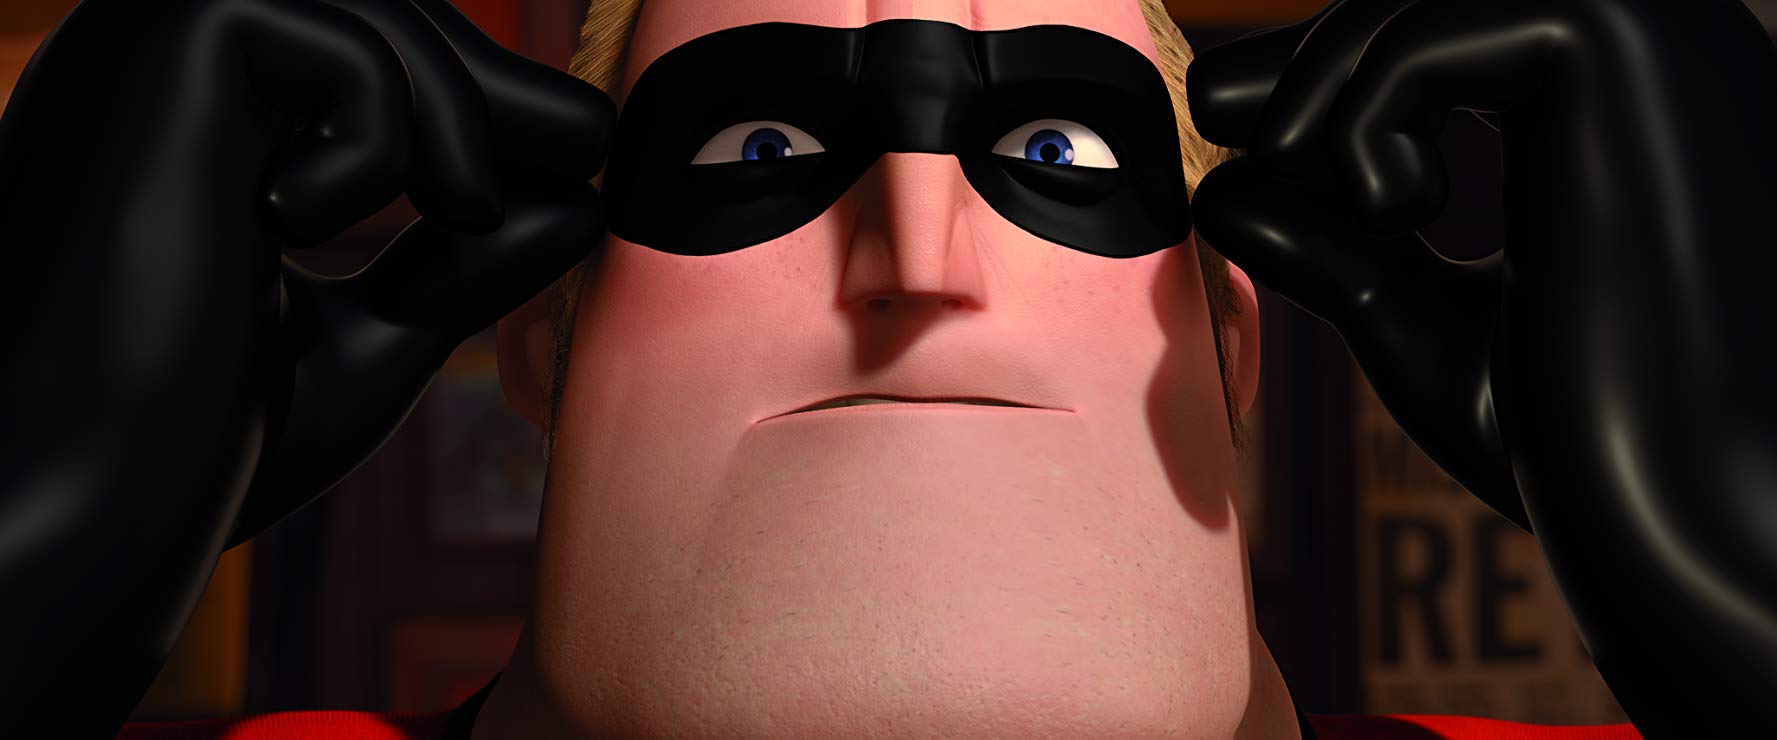 انیمیشن شگفت انگیزان - The Incredibles